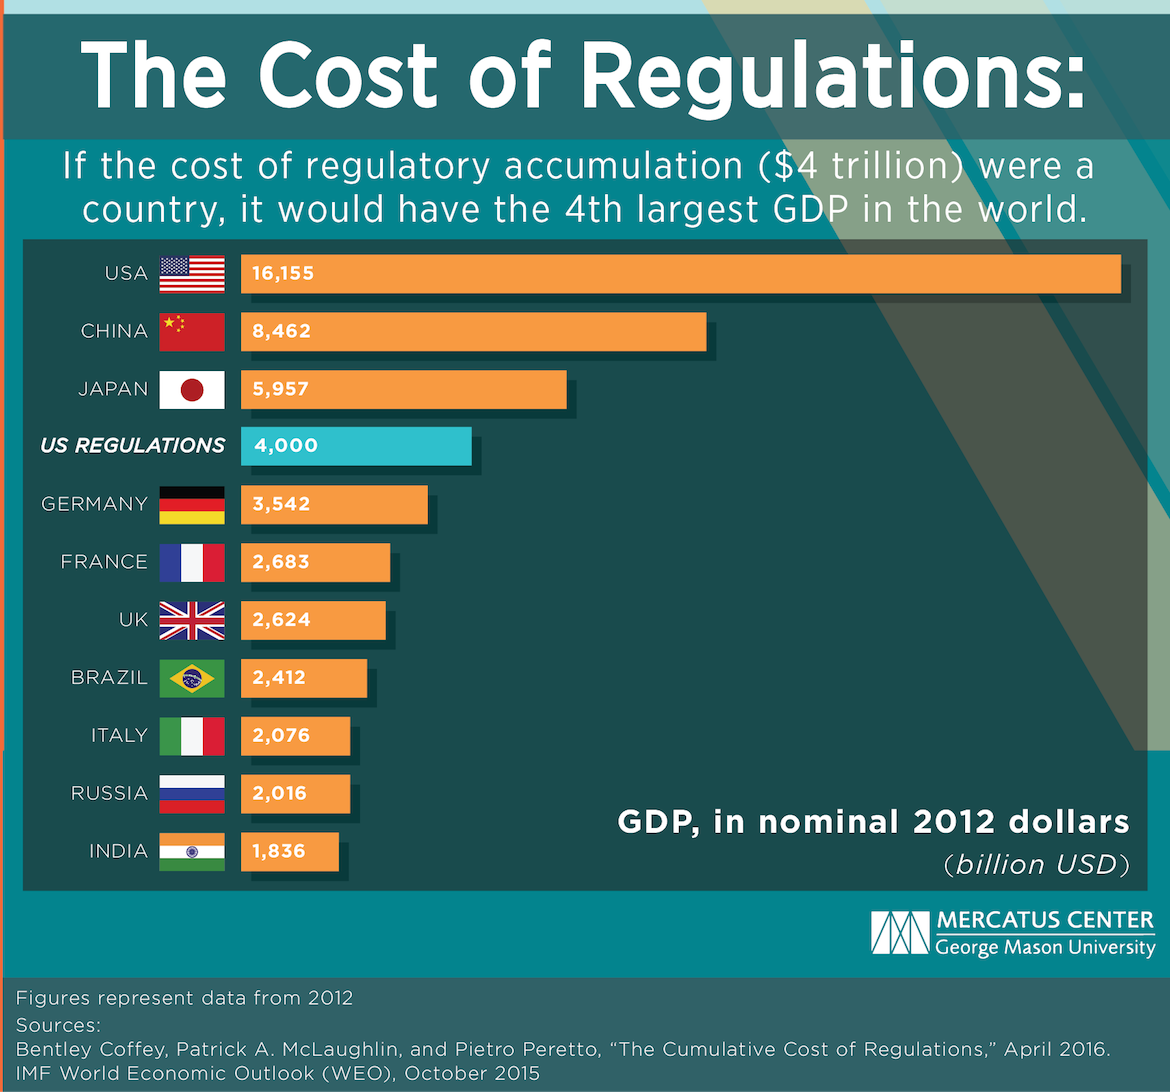 Regulatory Burden is $4 trillion